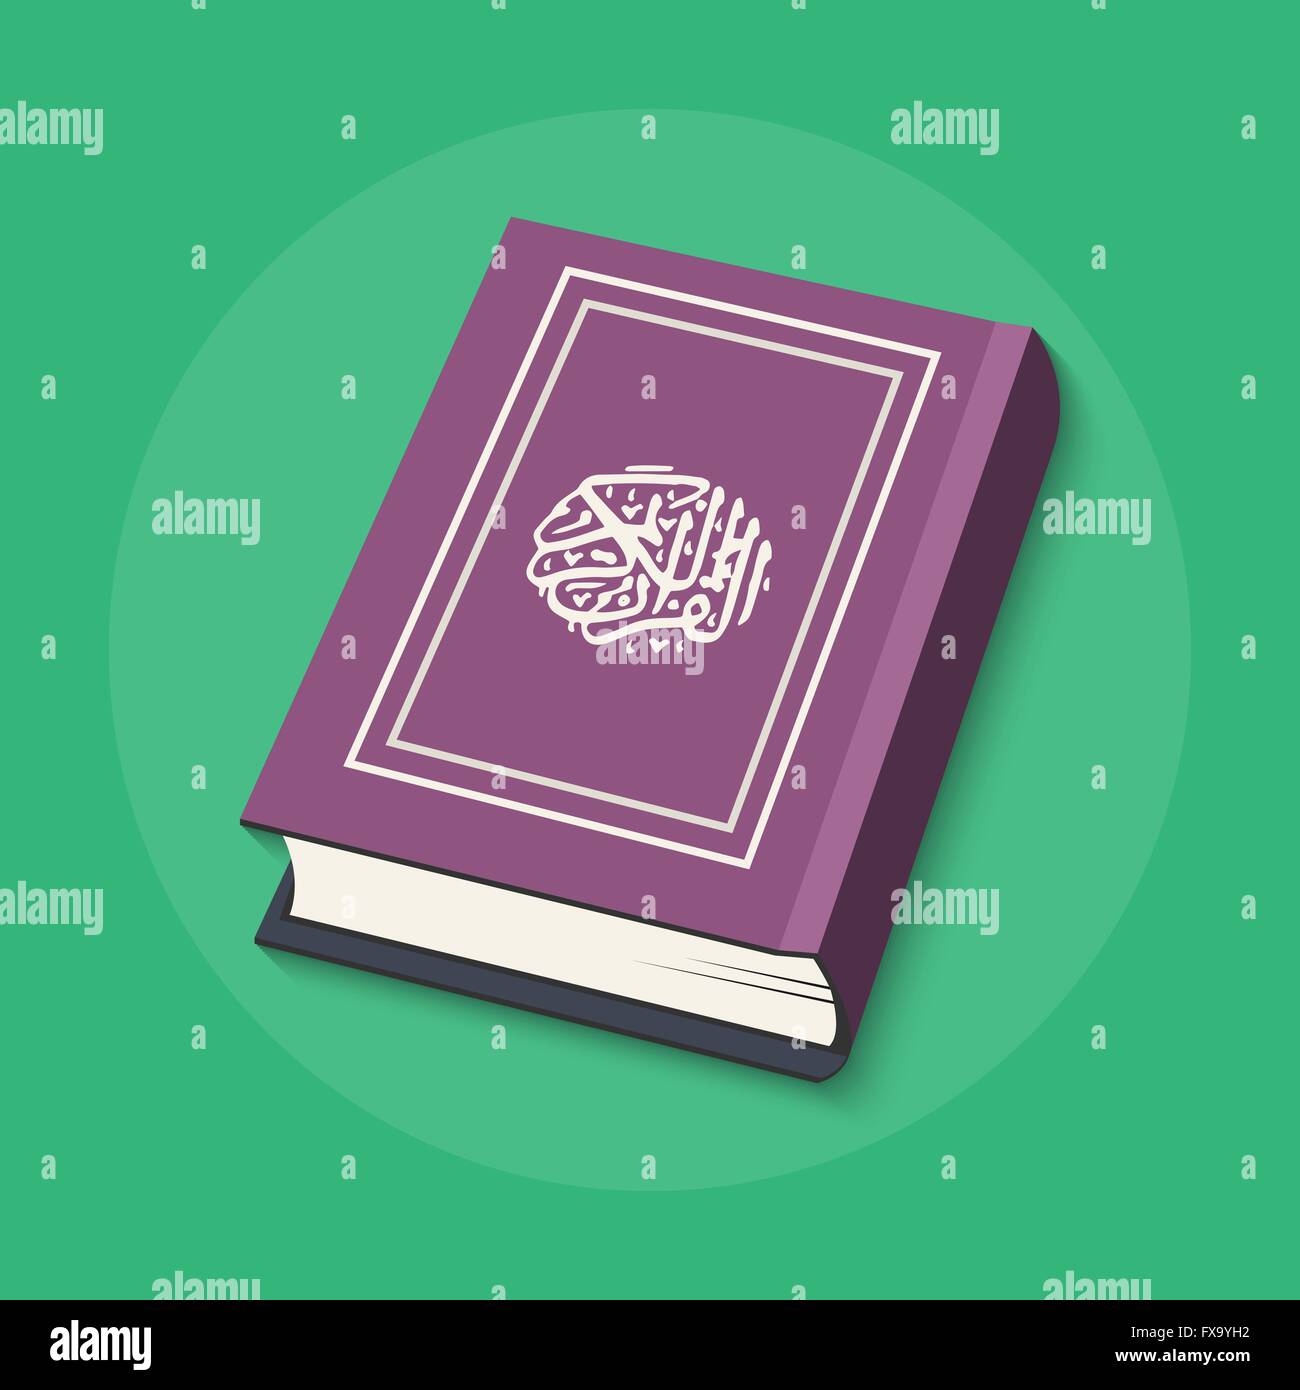 Ilustración vectorial del libro islámico Corán con caligrafía árabe que significa Al-Corán, el Santo Corán Ilustración del Vector